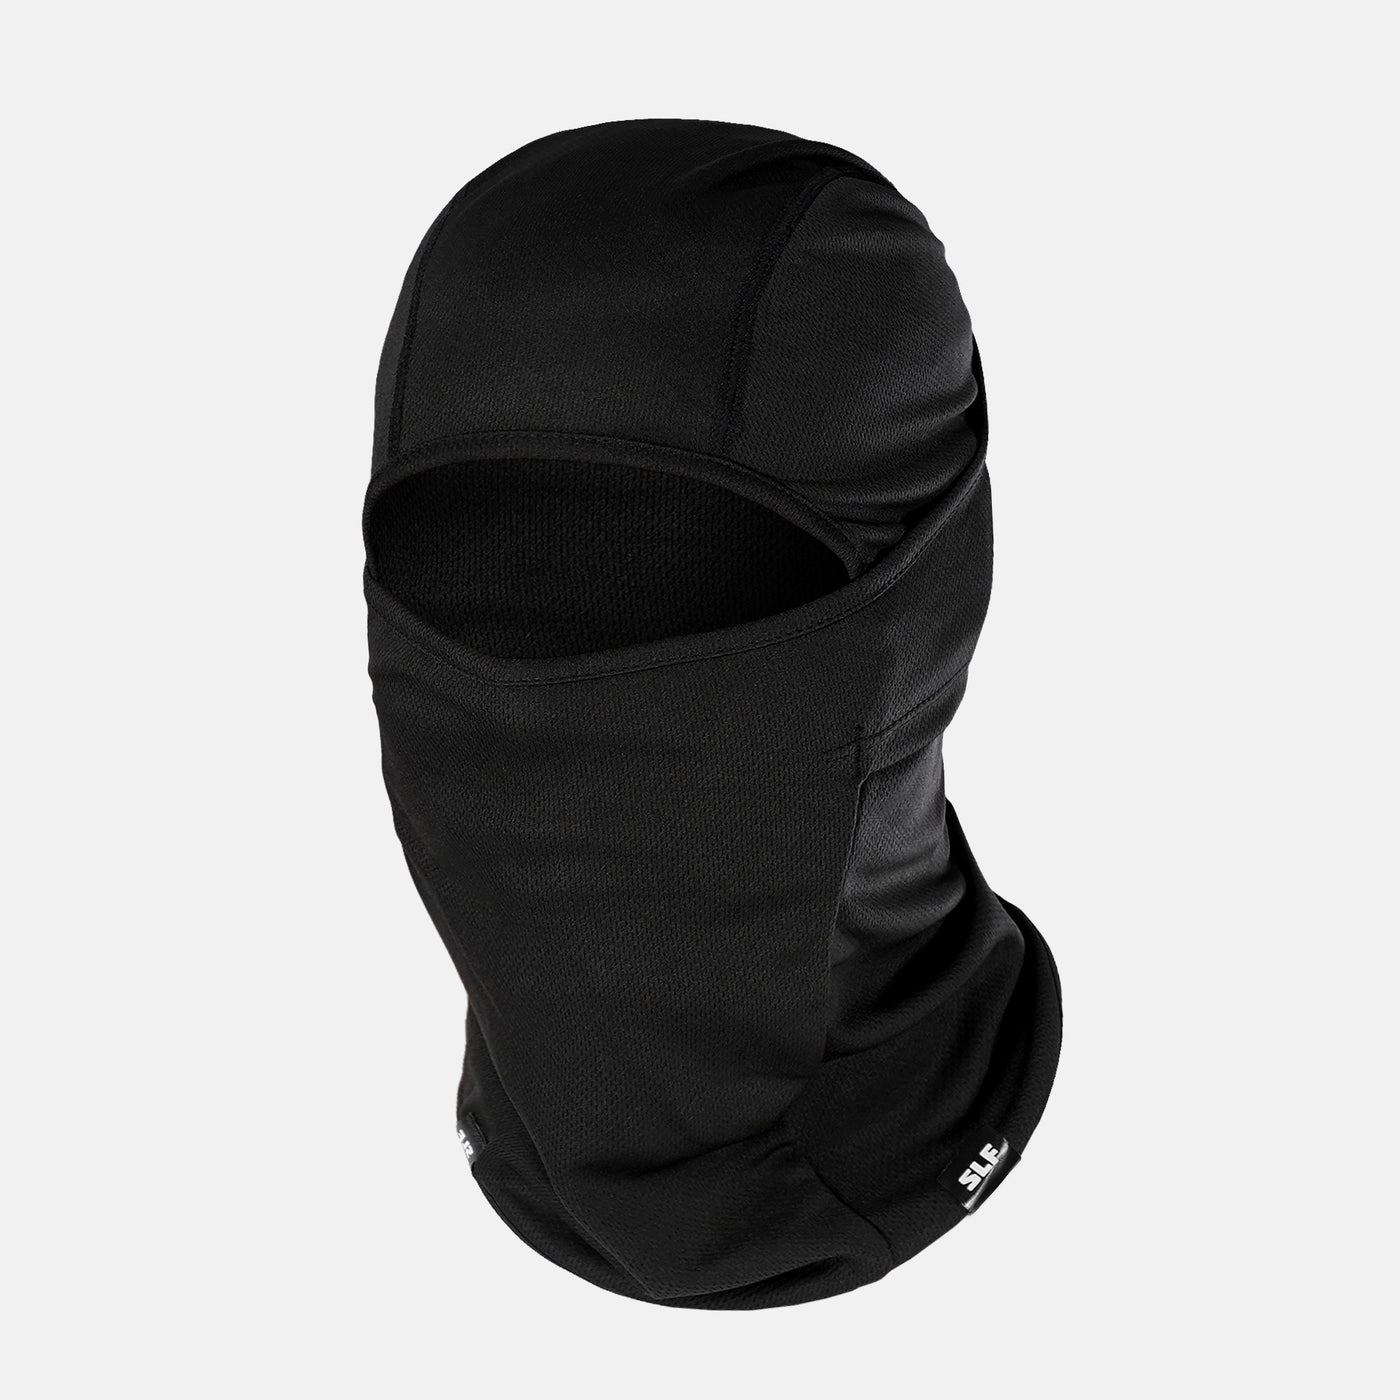 Basic Black Loose-fitting Shiesty Mask